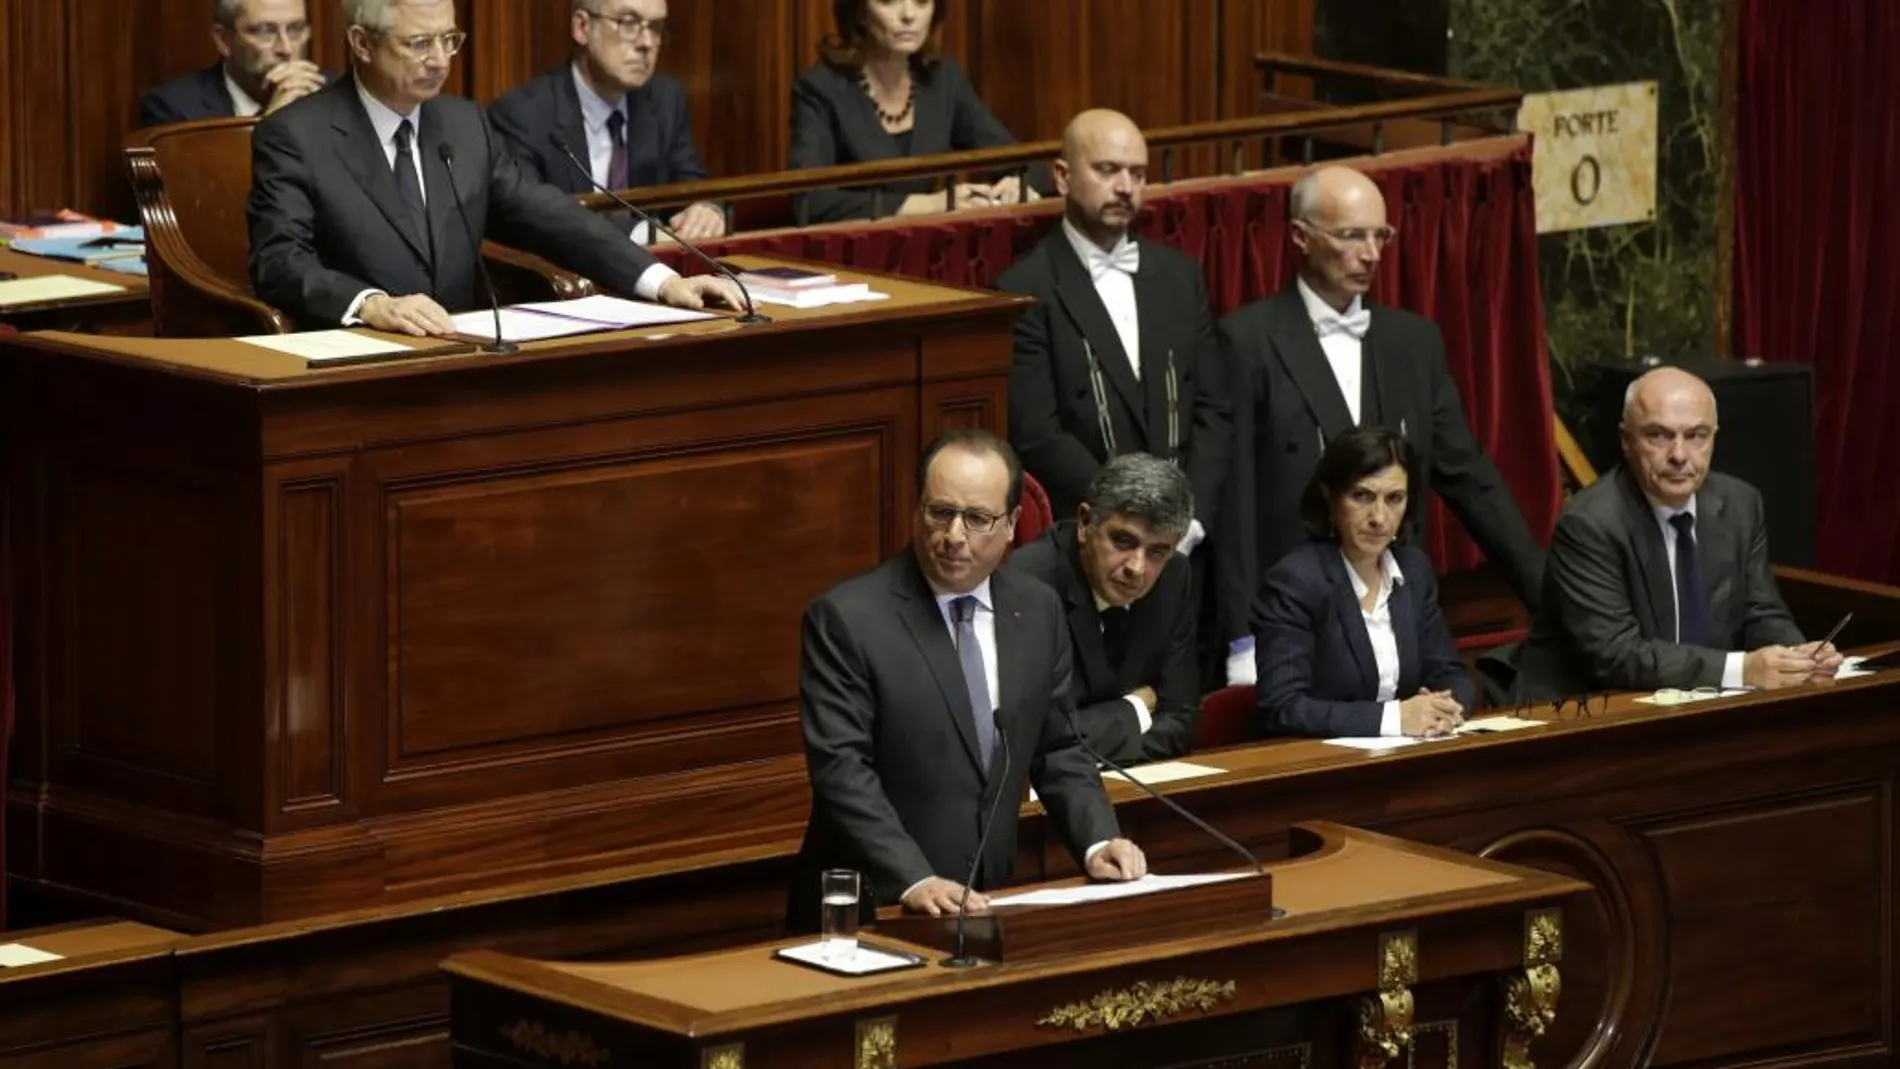 François Hollande (c) se dirigire a la nación a través de un discurso ante los parlamentarios de las dos cámaras legislativas del país reunidas en Congreso extraordinario en Versalles.